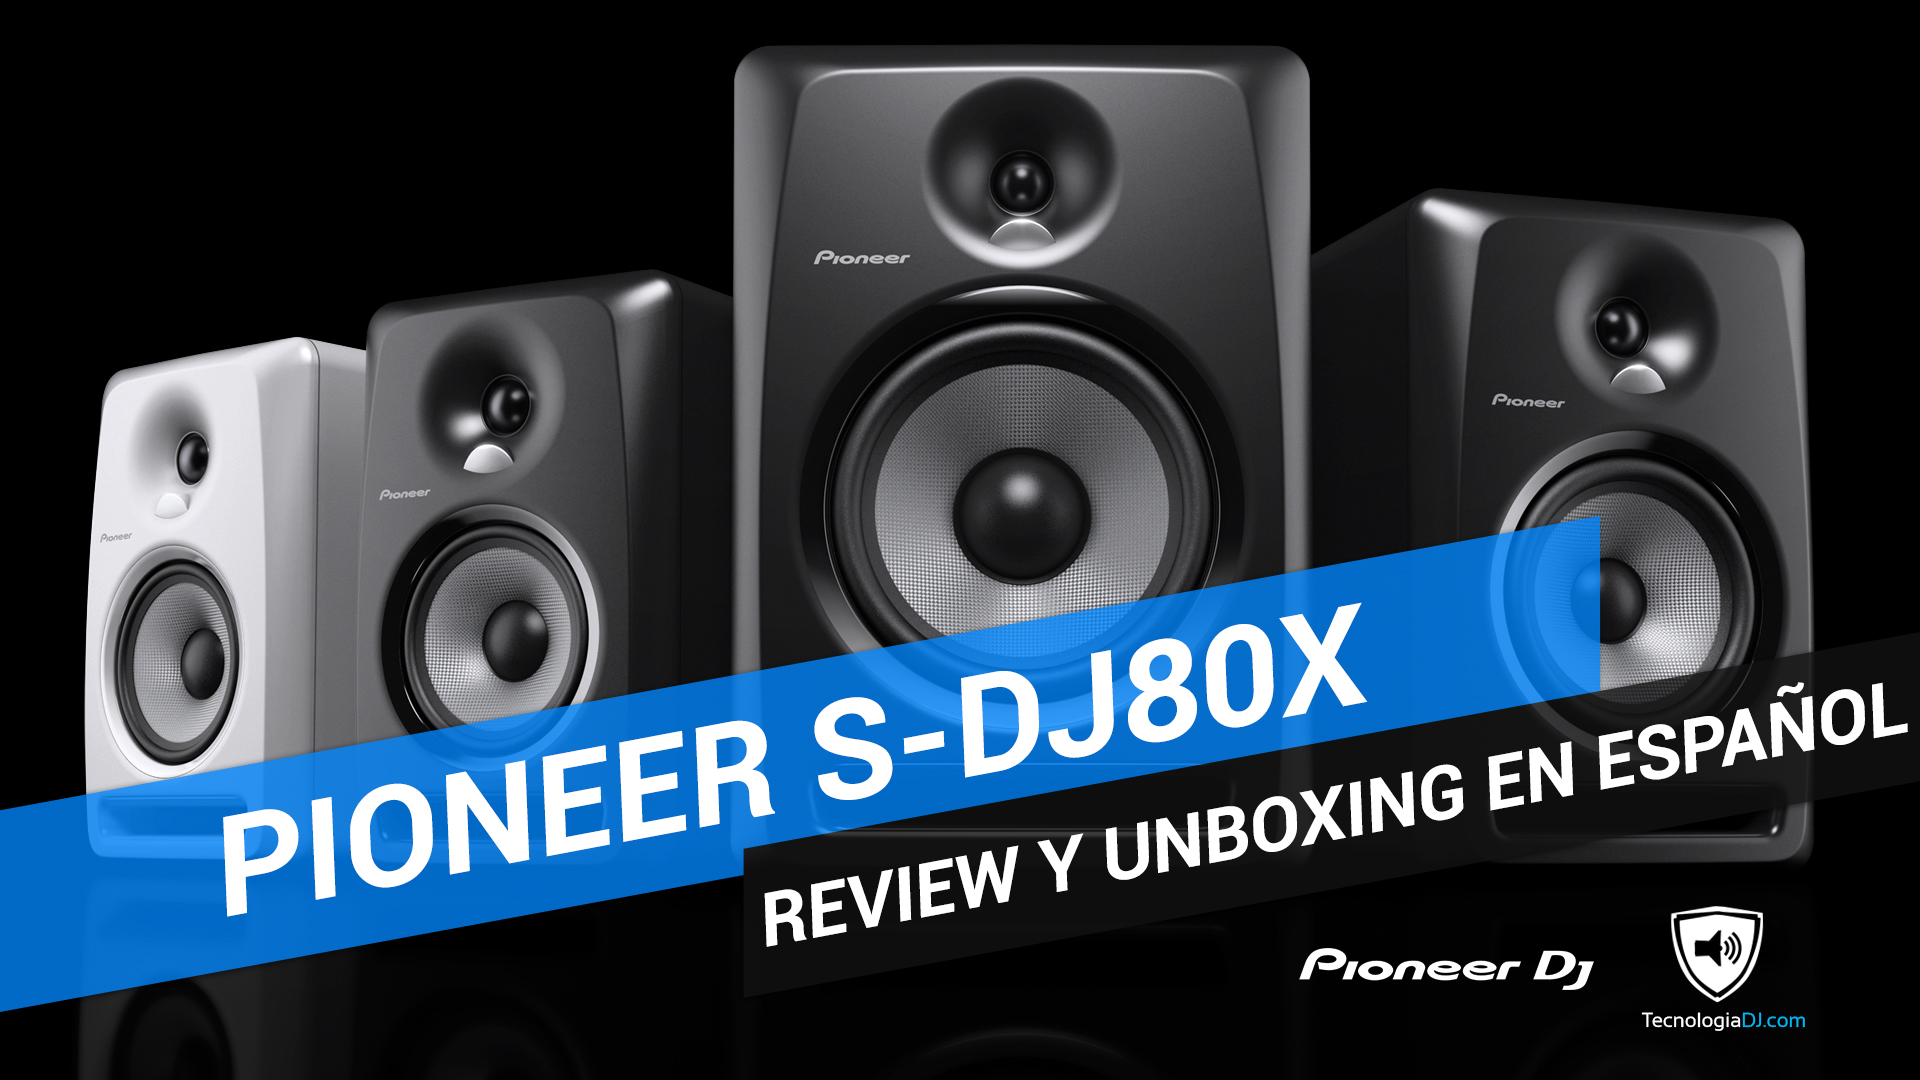 Review y unboxing en español monitores Pioneer S-DJ80X